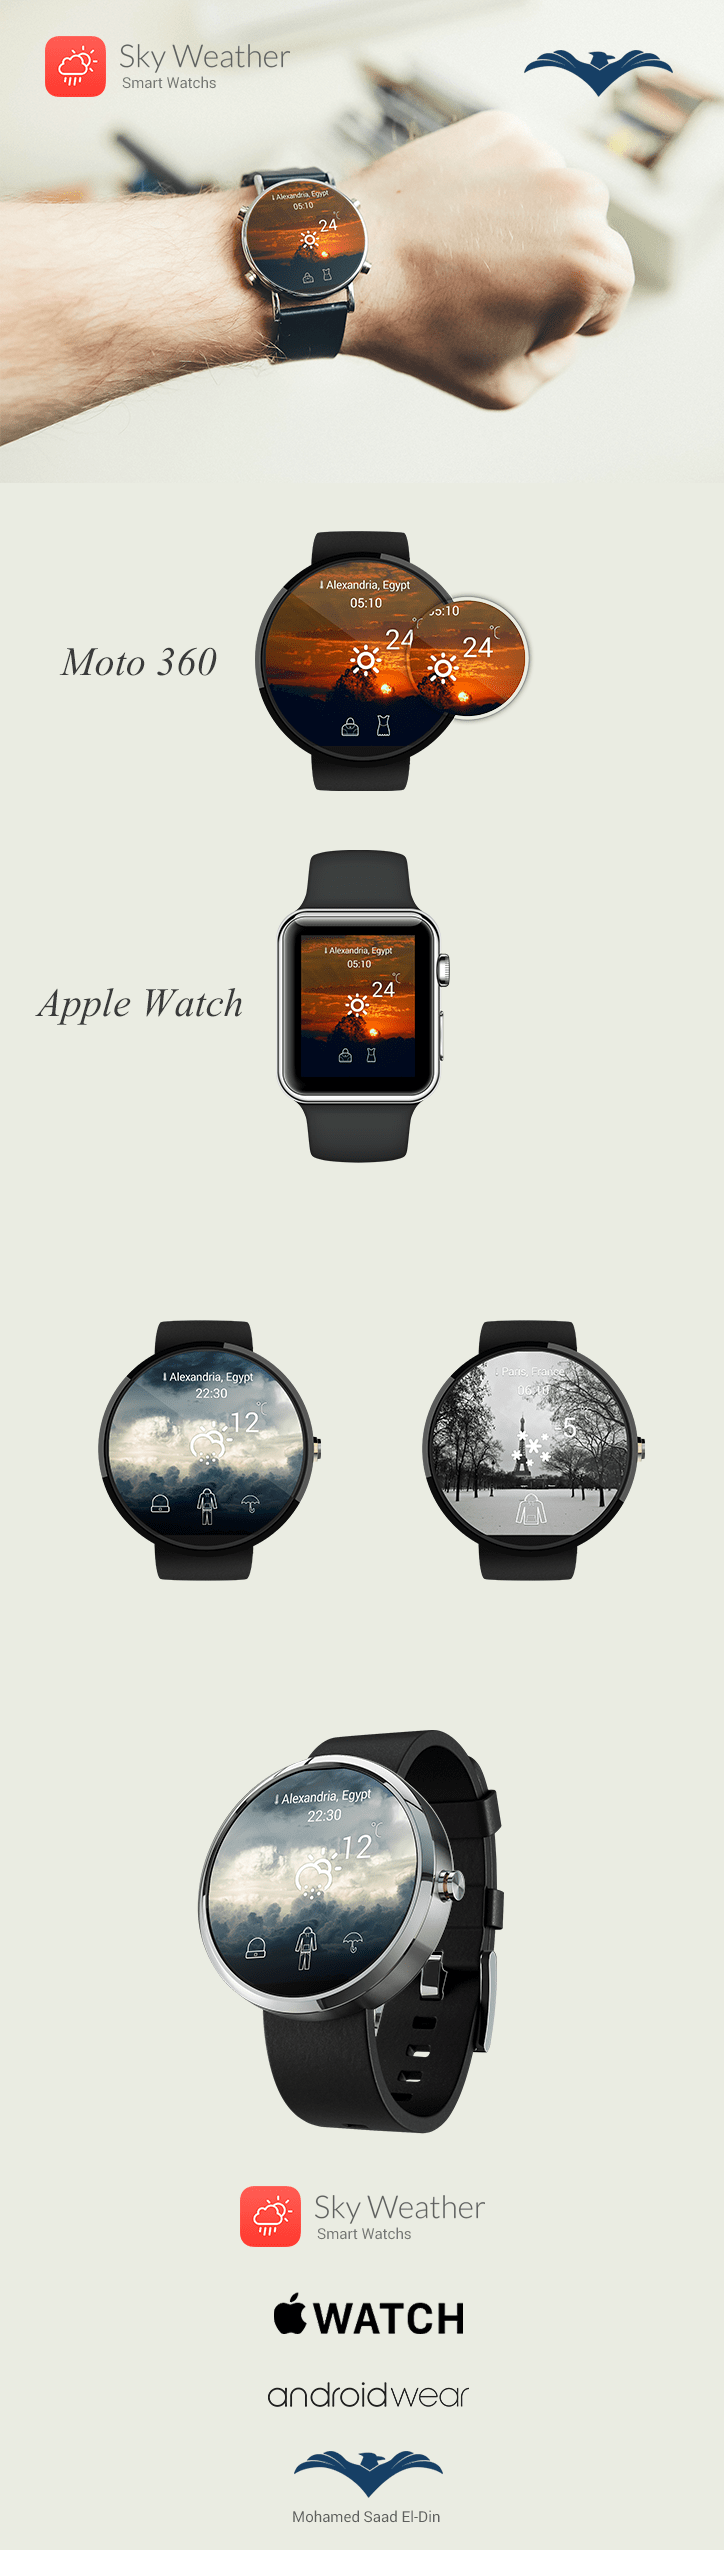 apple watch Android Wear smart watch